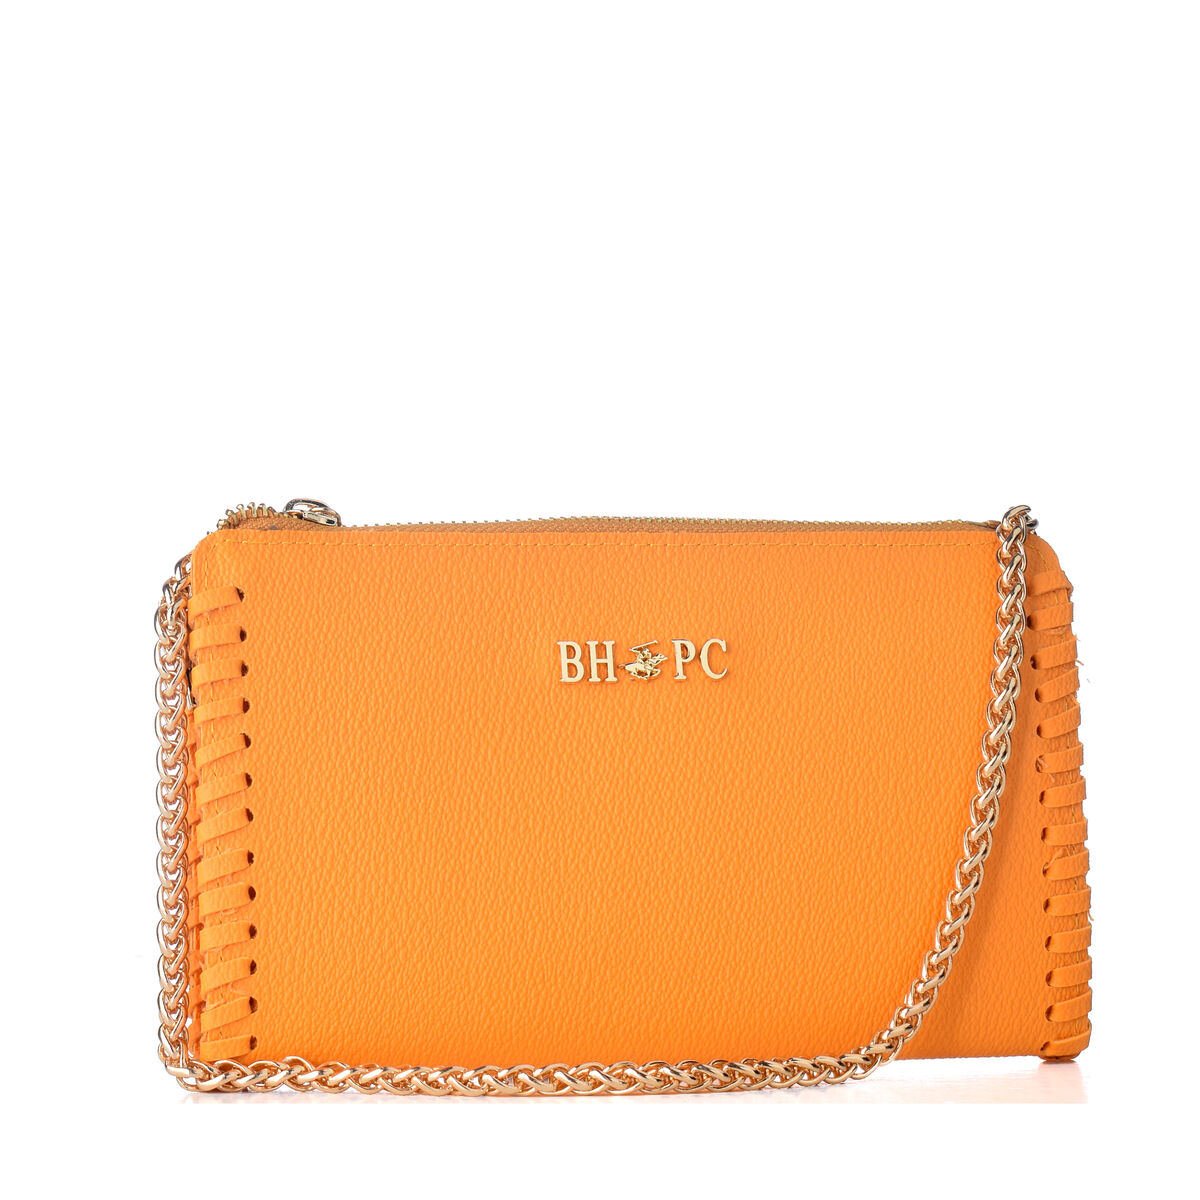 Kaufe Orange Damen Handtasche von Beverly Hills Polo Club bei AWK Flagship um € 51.00